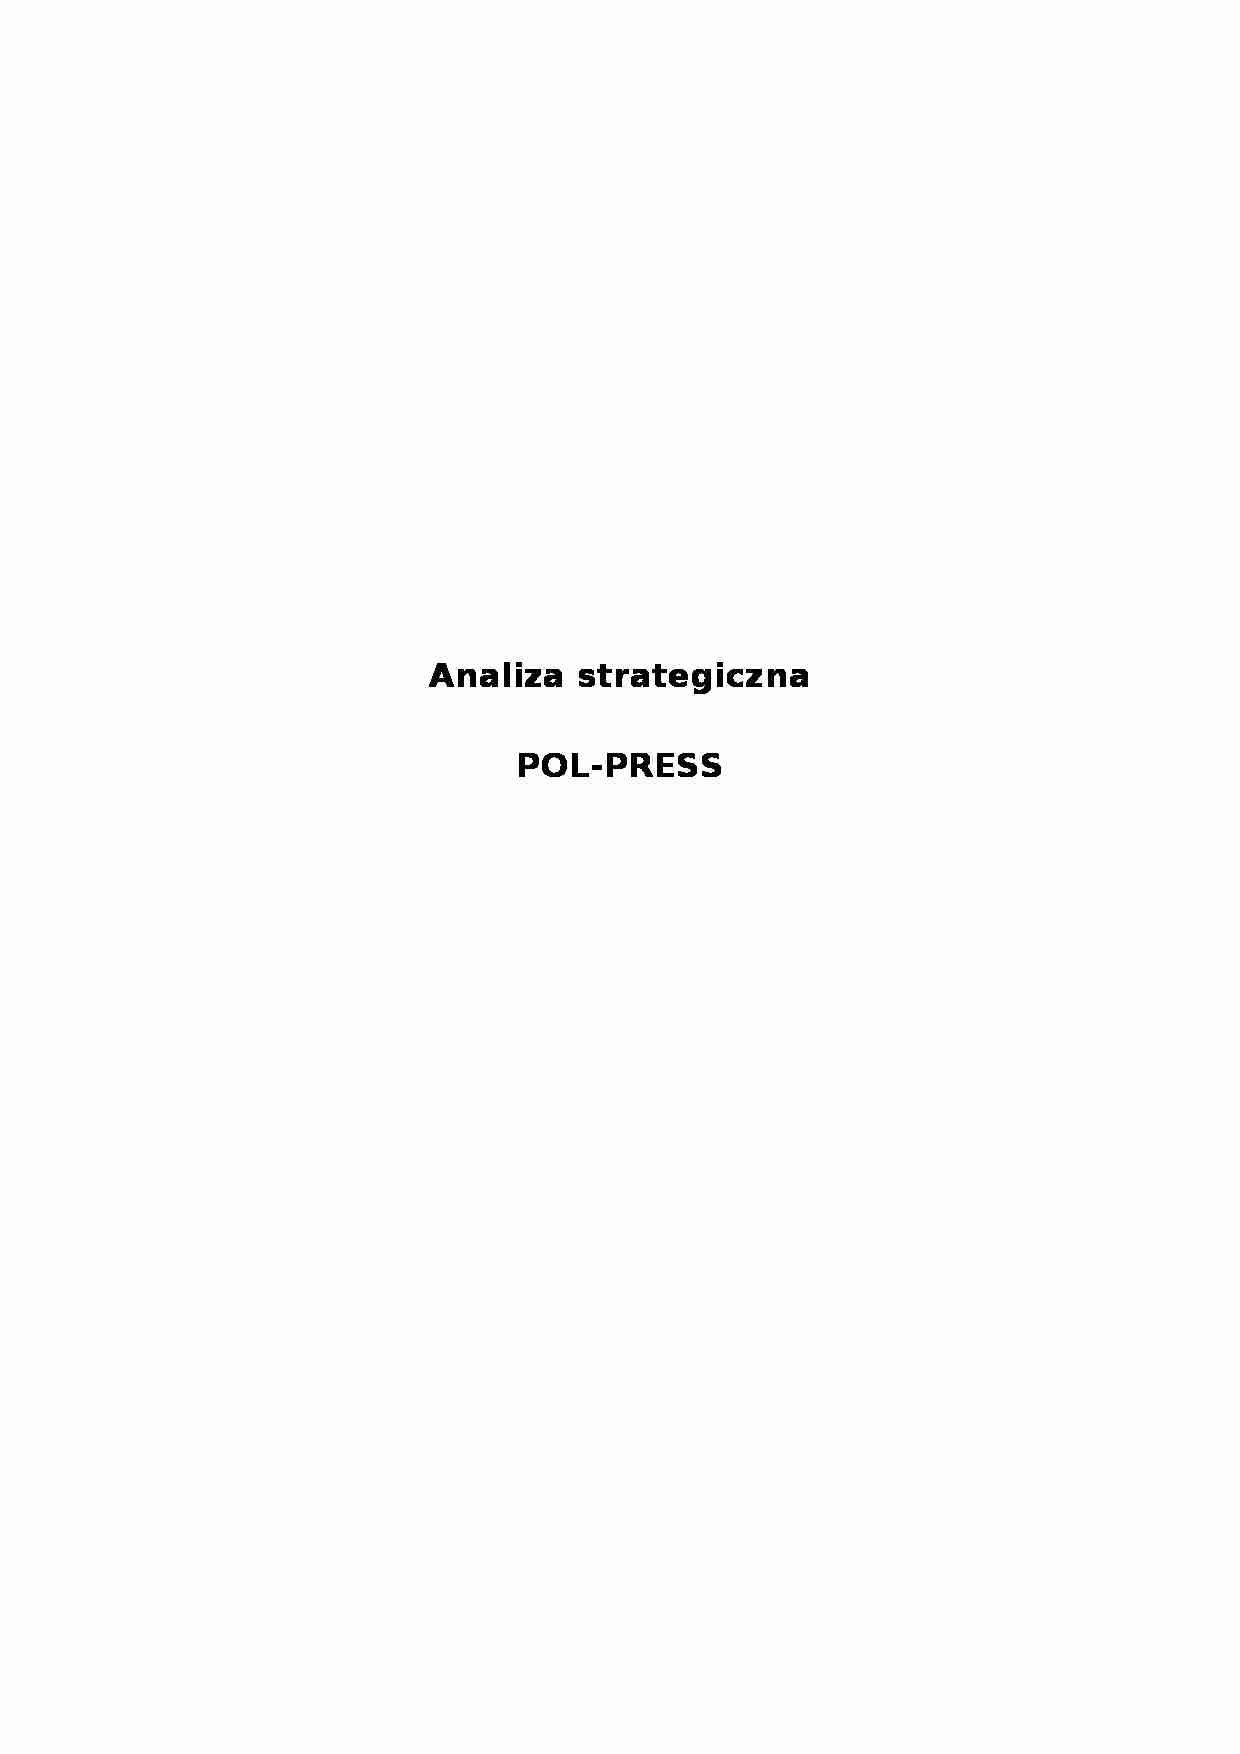 Analiza strategiczna  POL-PRESS - Zakres działalności - strona 1